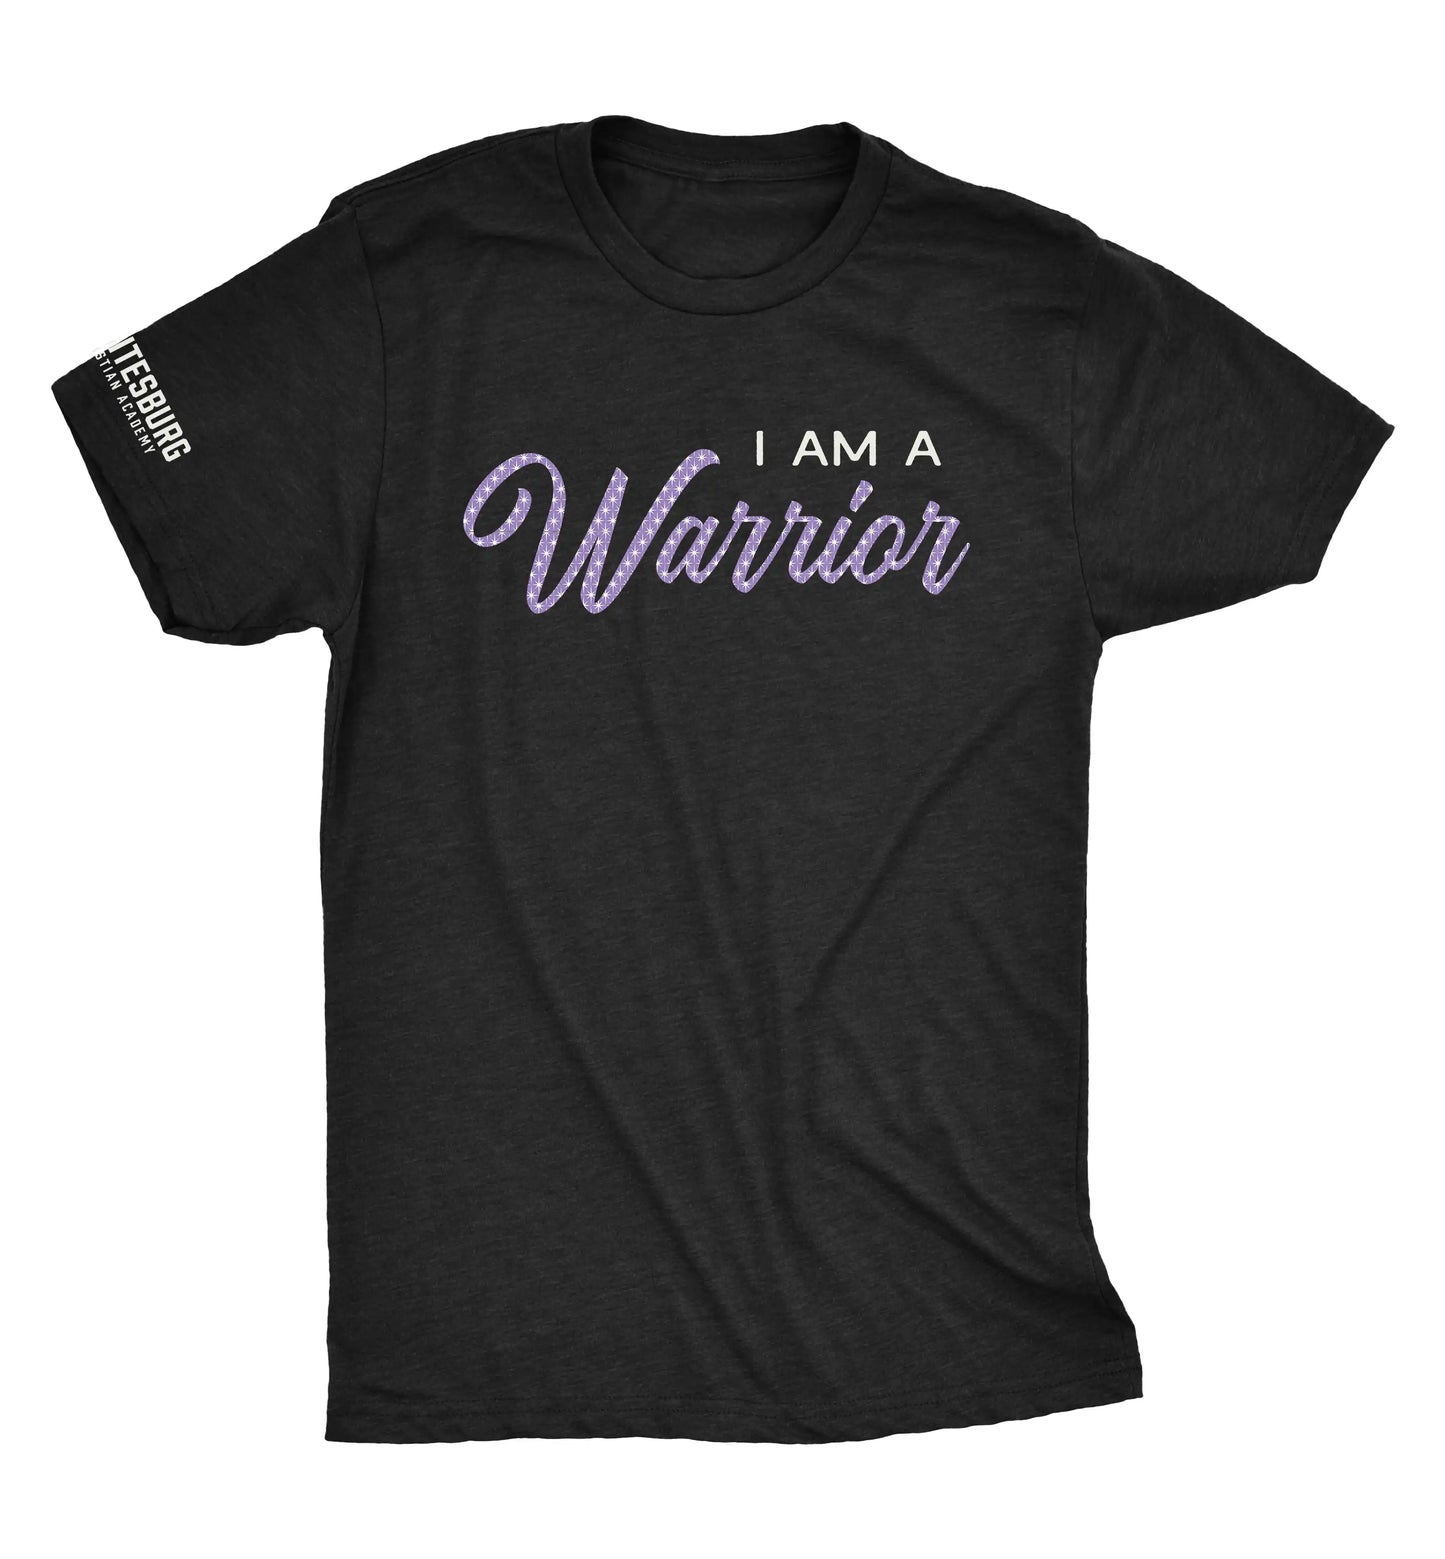 I am a Warrior Tshirt